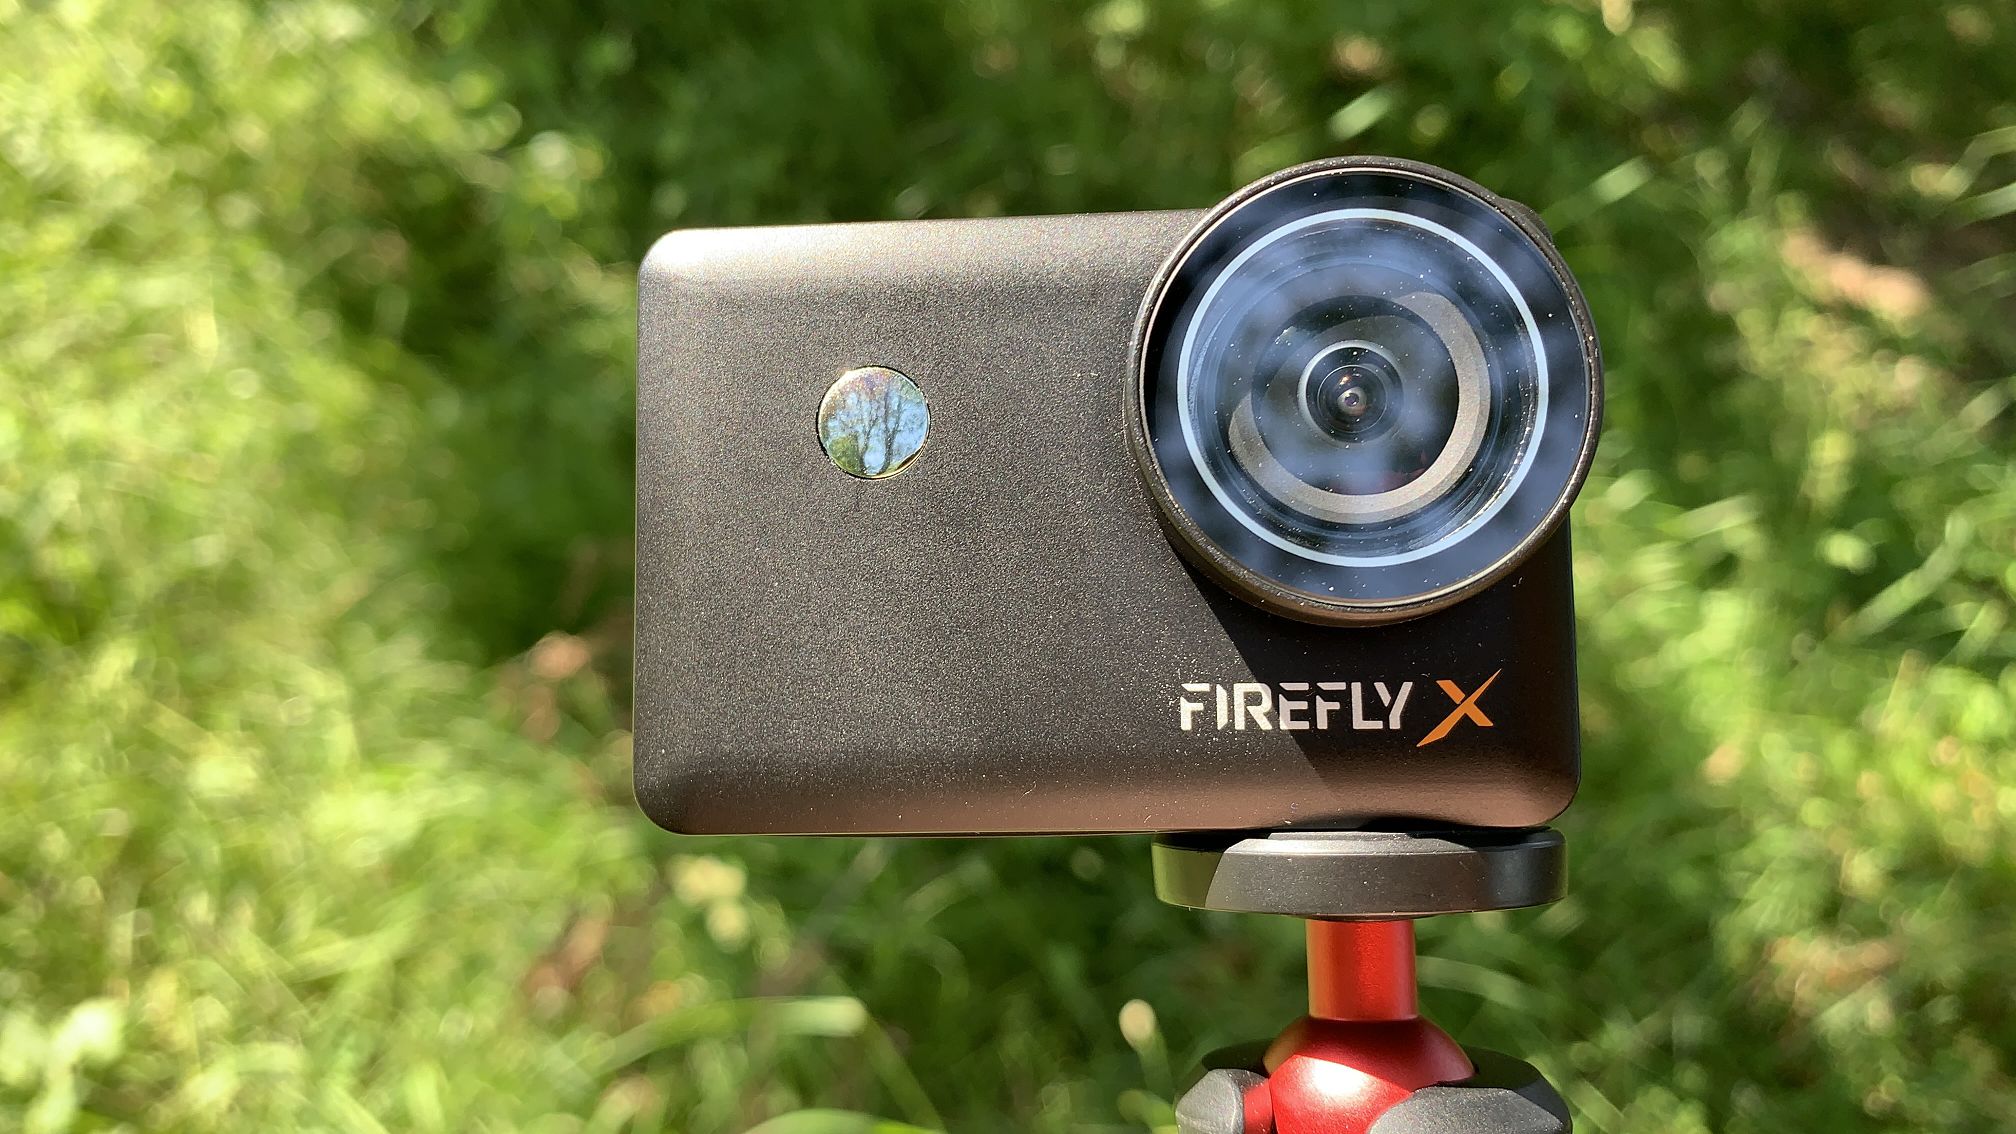 Экшн камера FIREFLY X в Солнечный день| Дубль 2